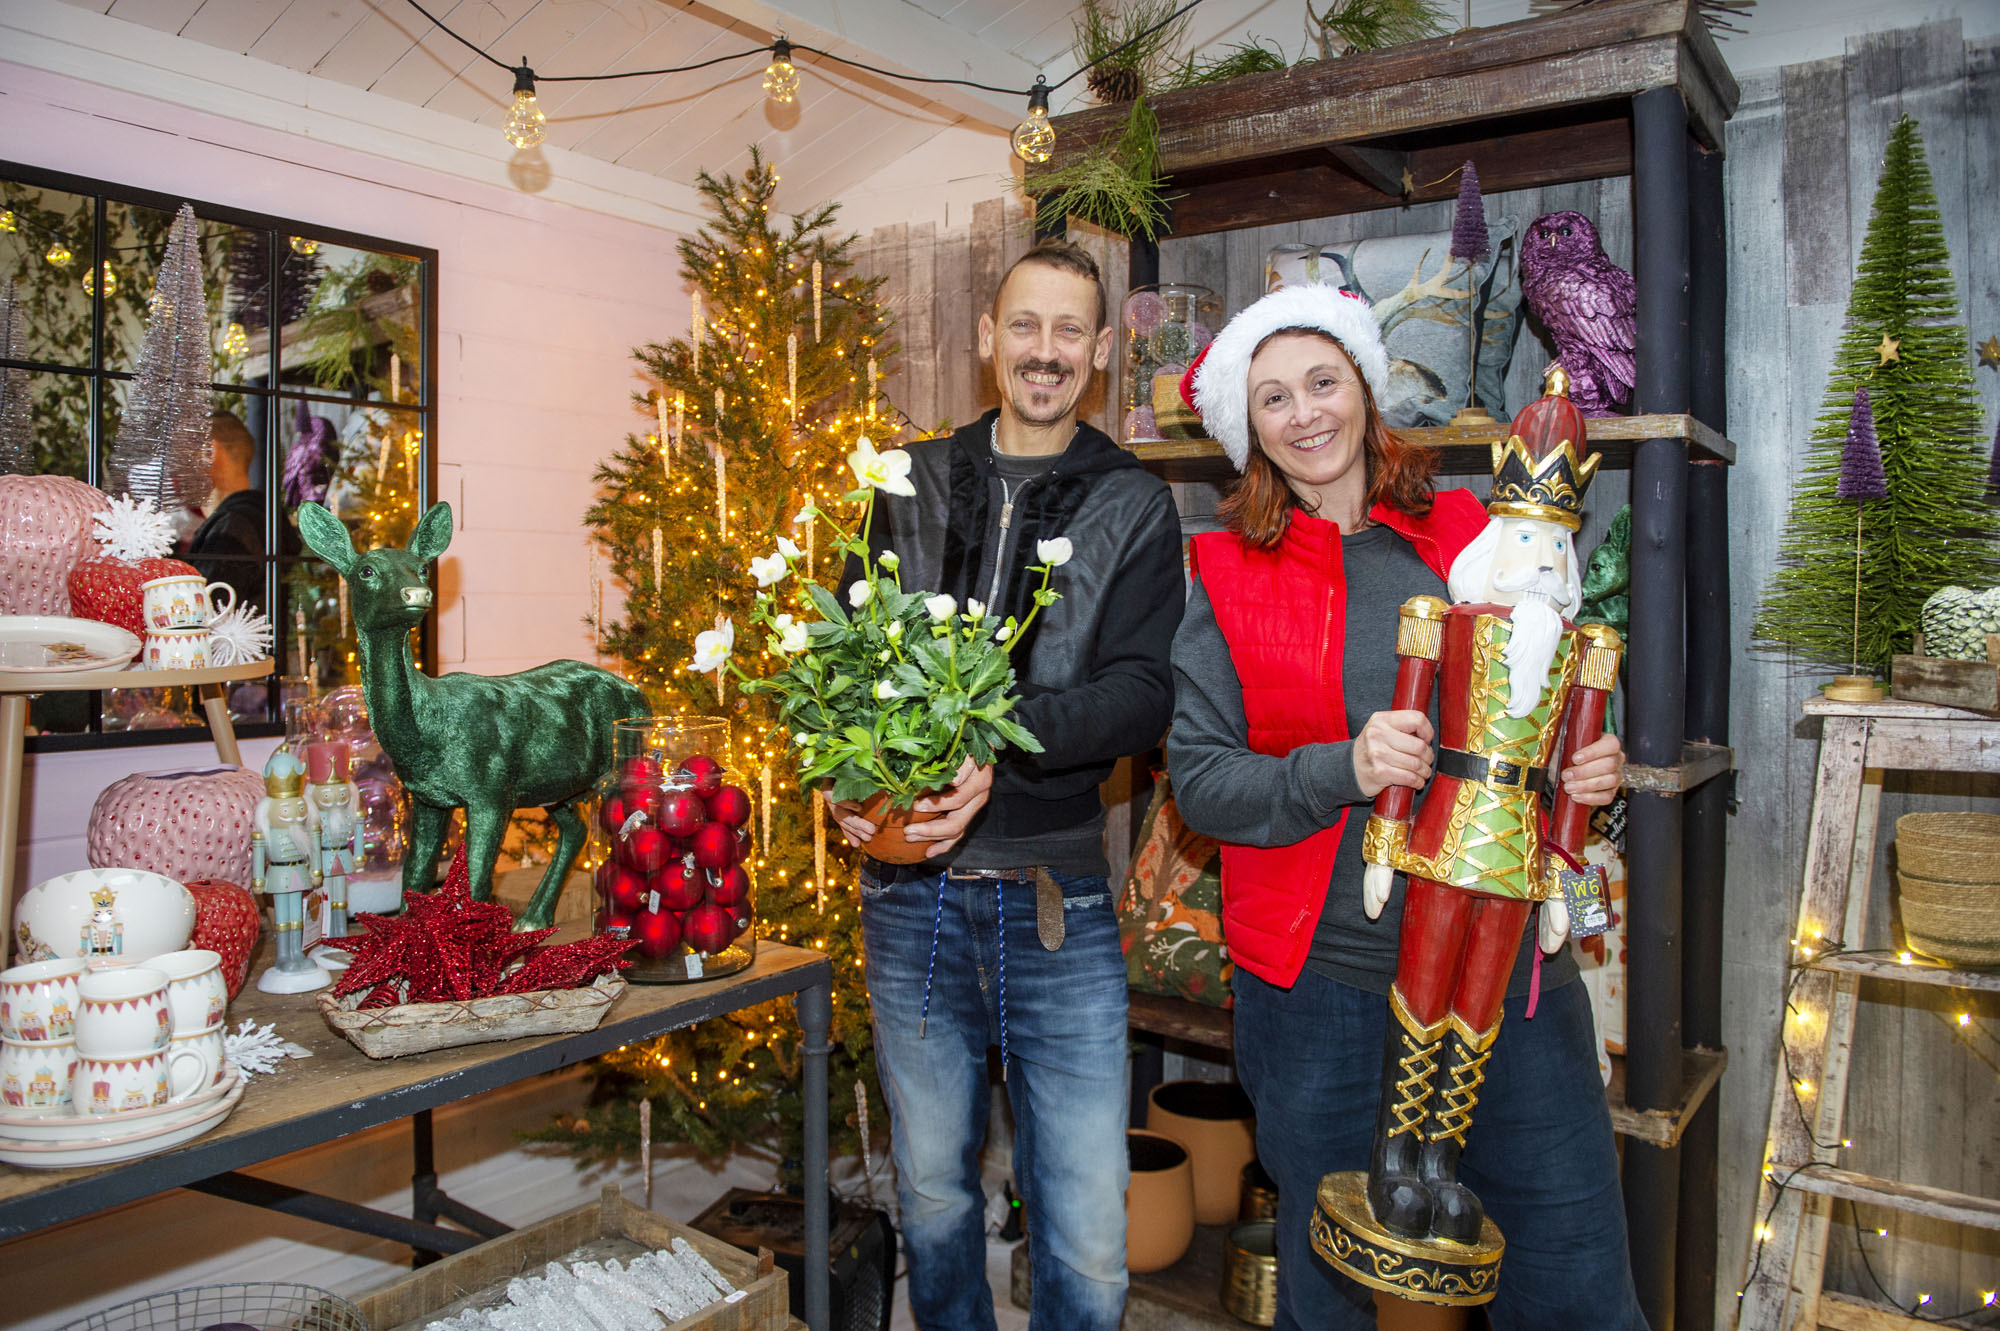 W6 Garden Centre and Café: Celebrate A Magical Green Christmas